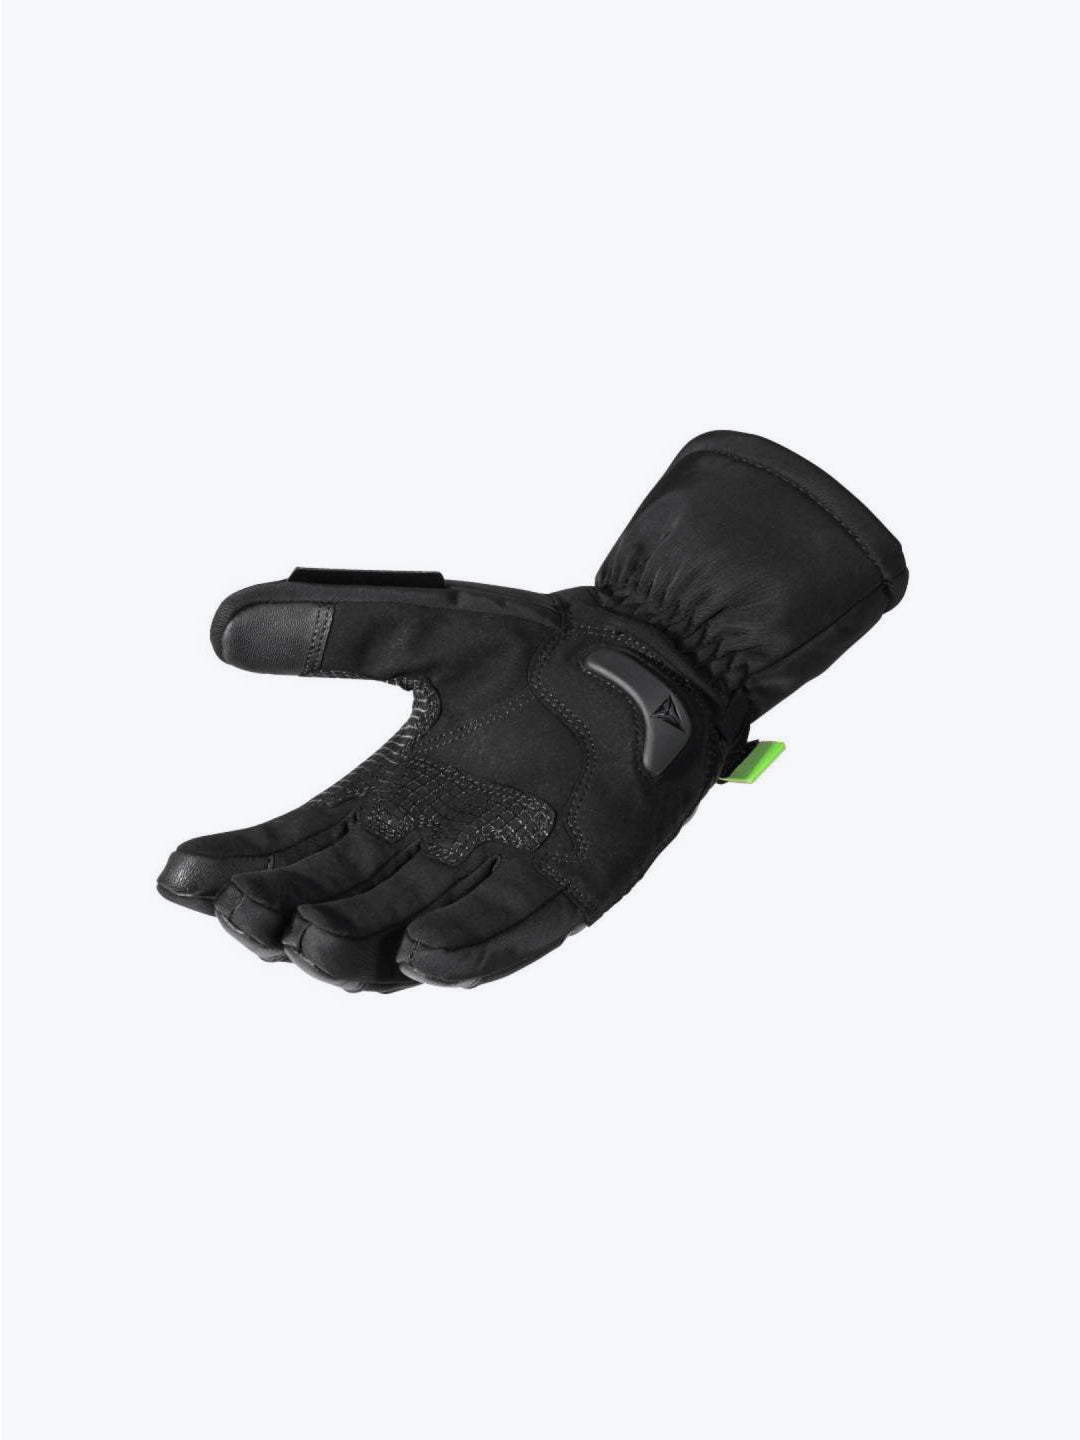 Motowolf Gloves Black Green 0318